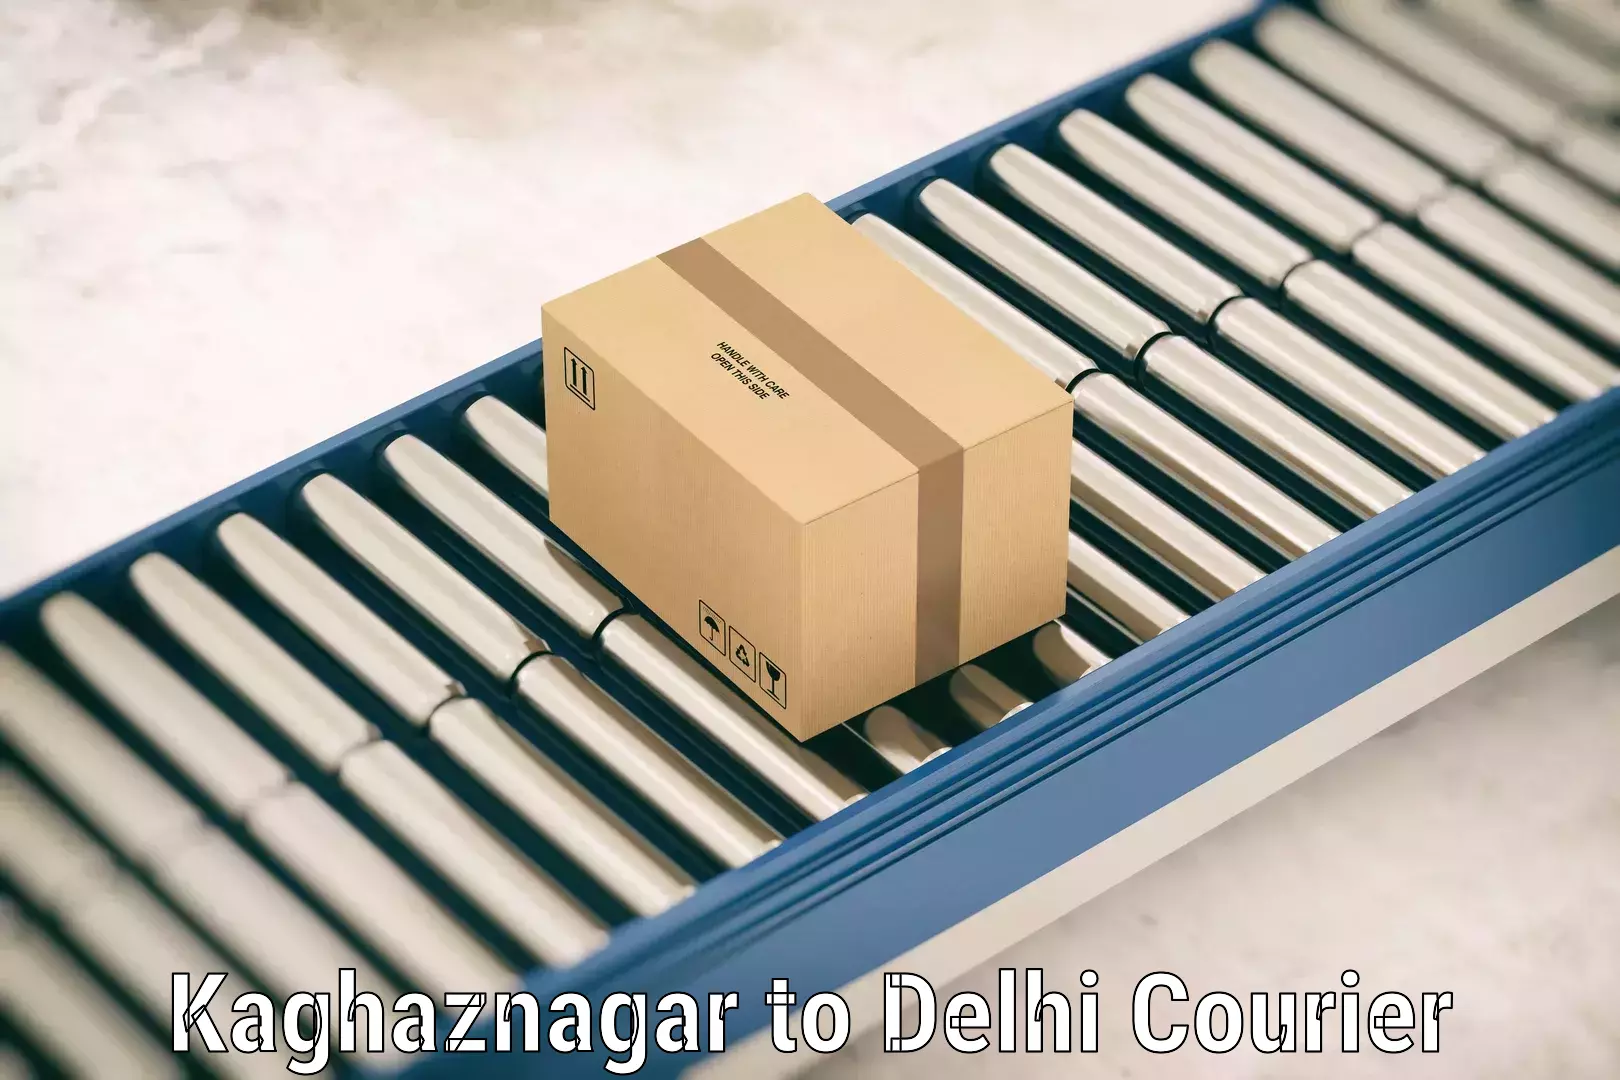 Luggage transfer service Kaghaznagar to NIT Delhi